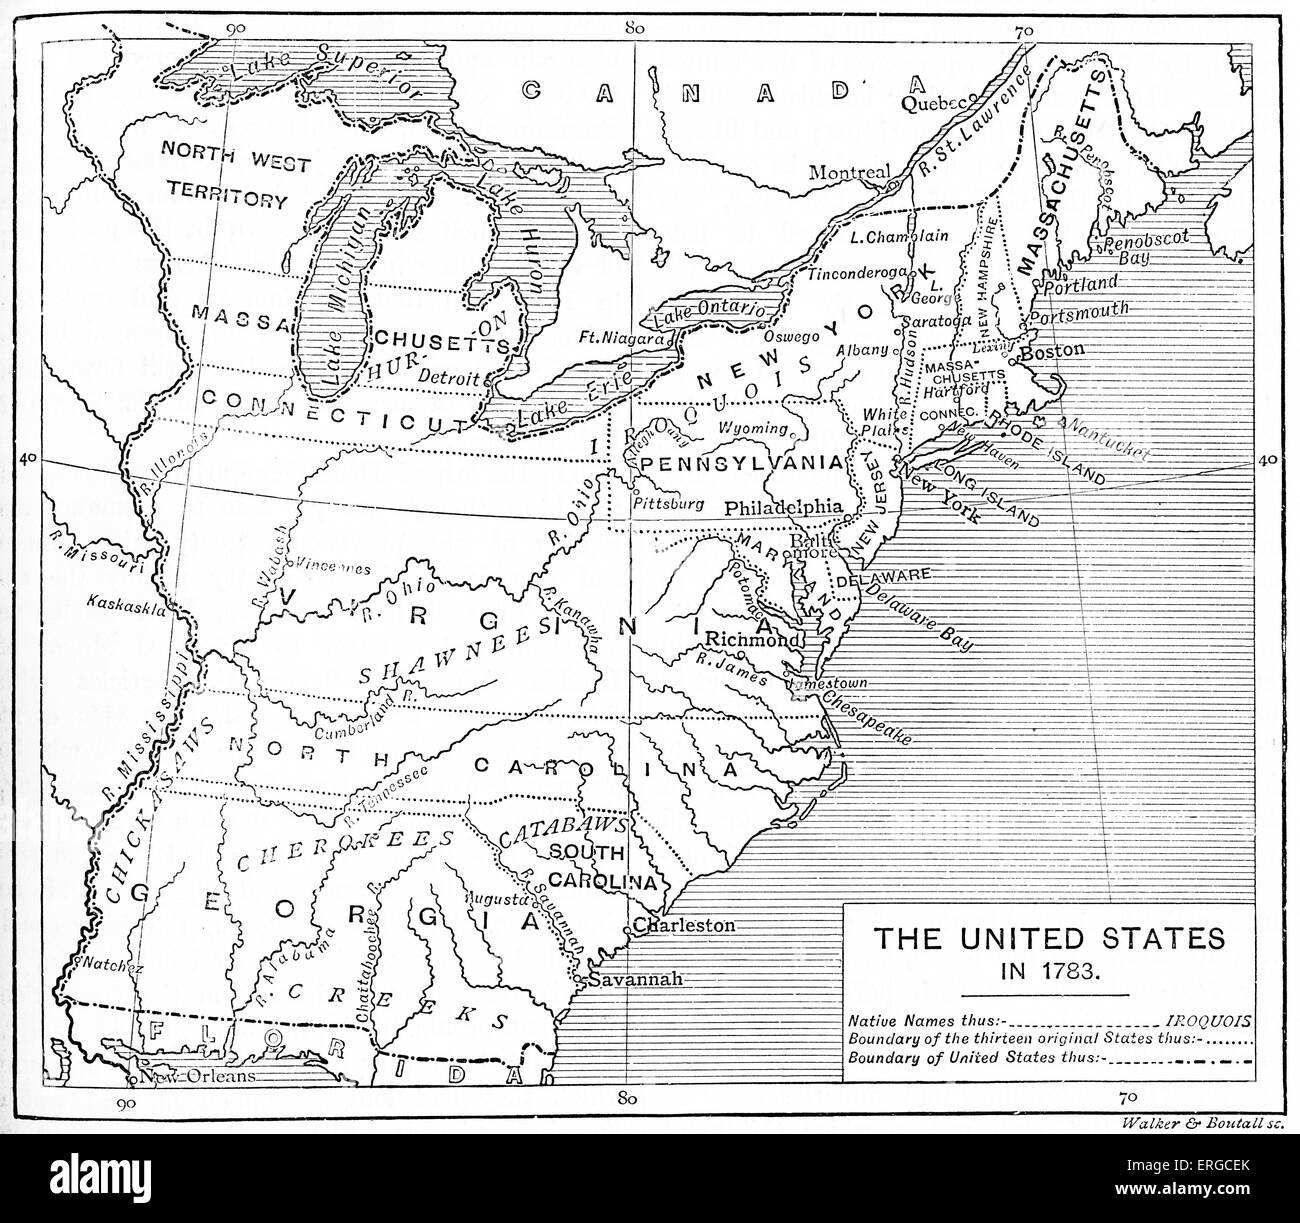 Karte von USA nach der Unabhängigkeit, 1783. Dreizehn Gründungsmitgliedern, nationale Grenze und gebürtige amerikanische Ortsnamen angezeigt. Stockfoto